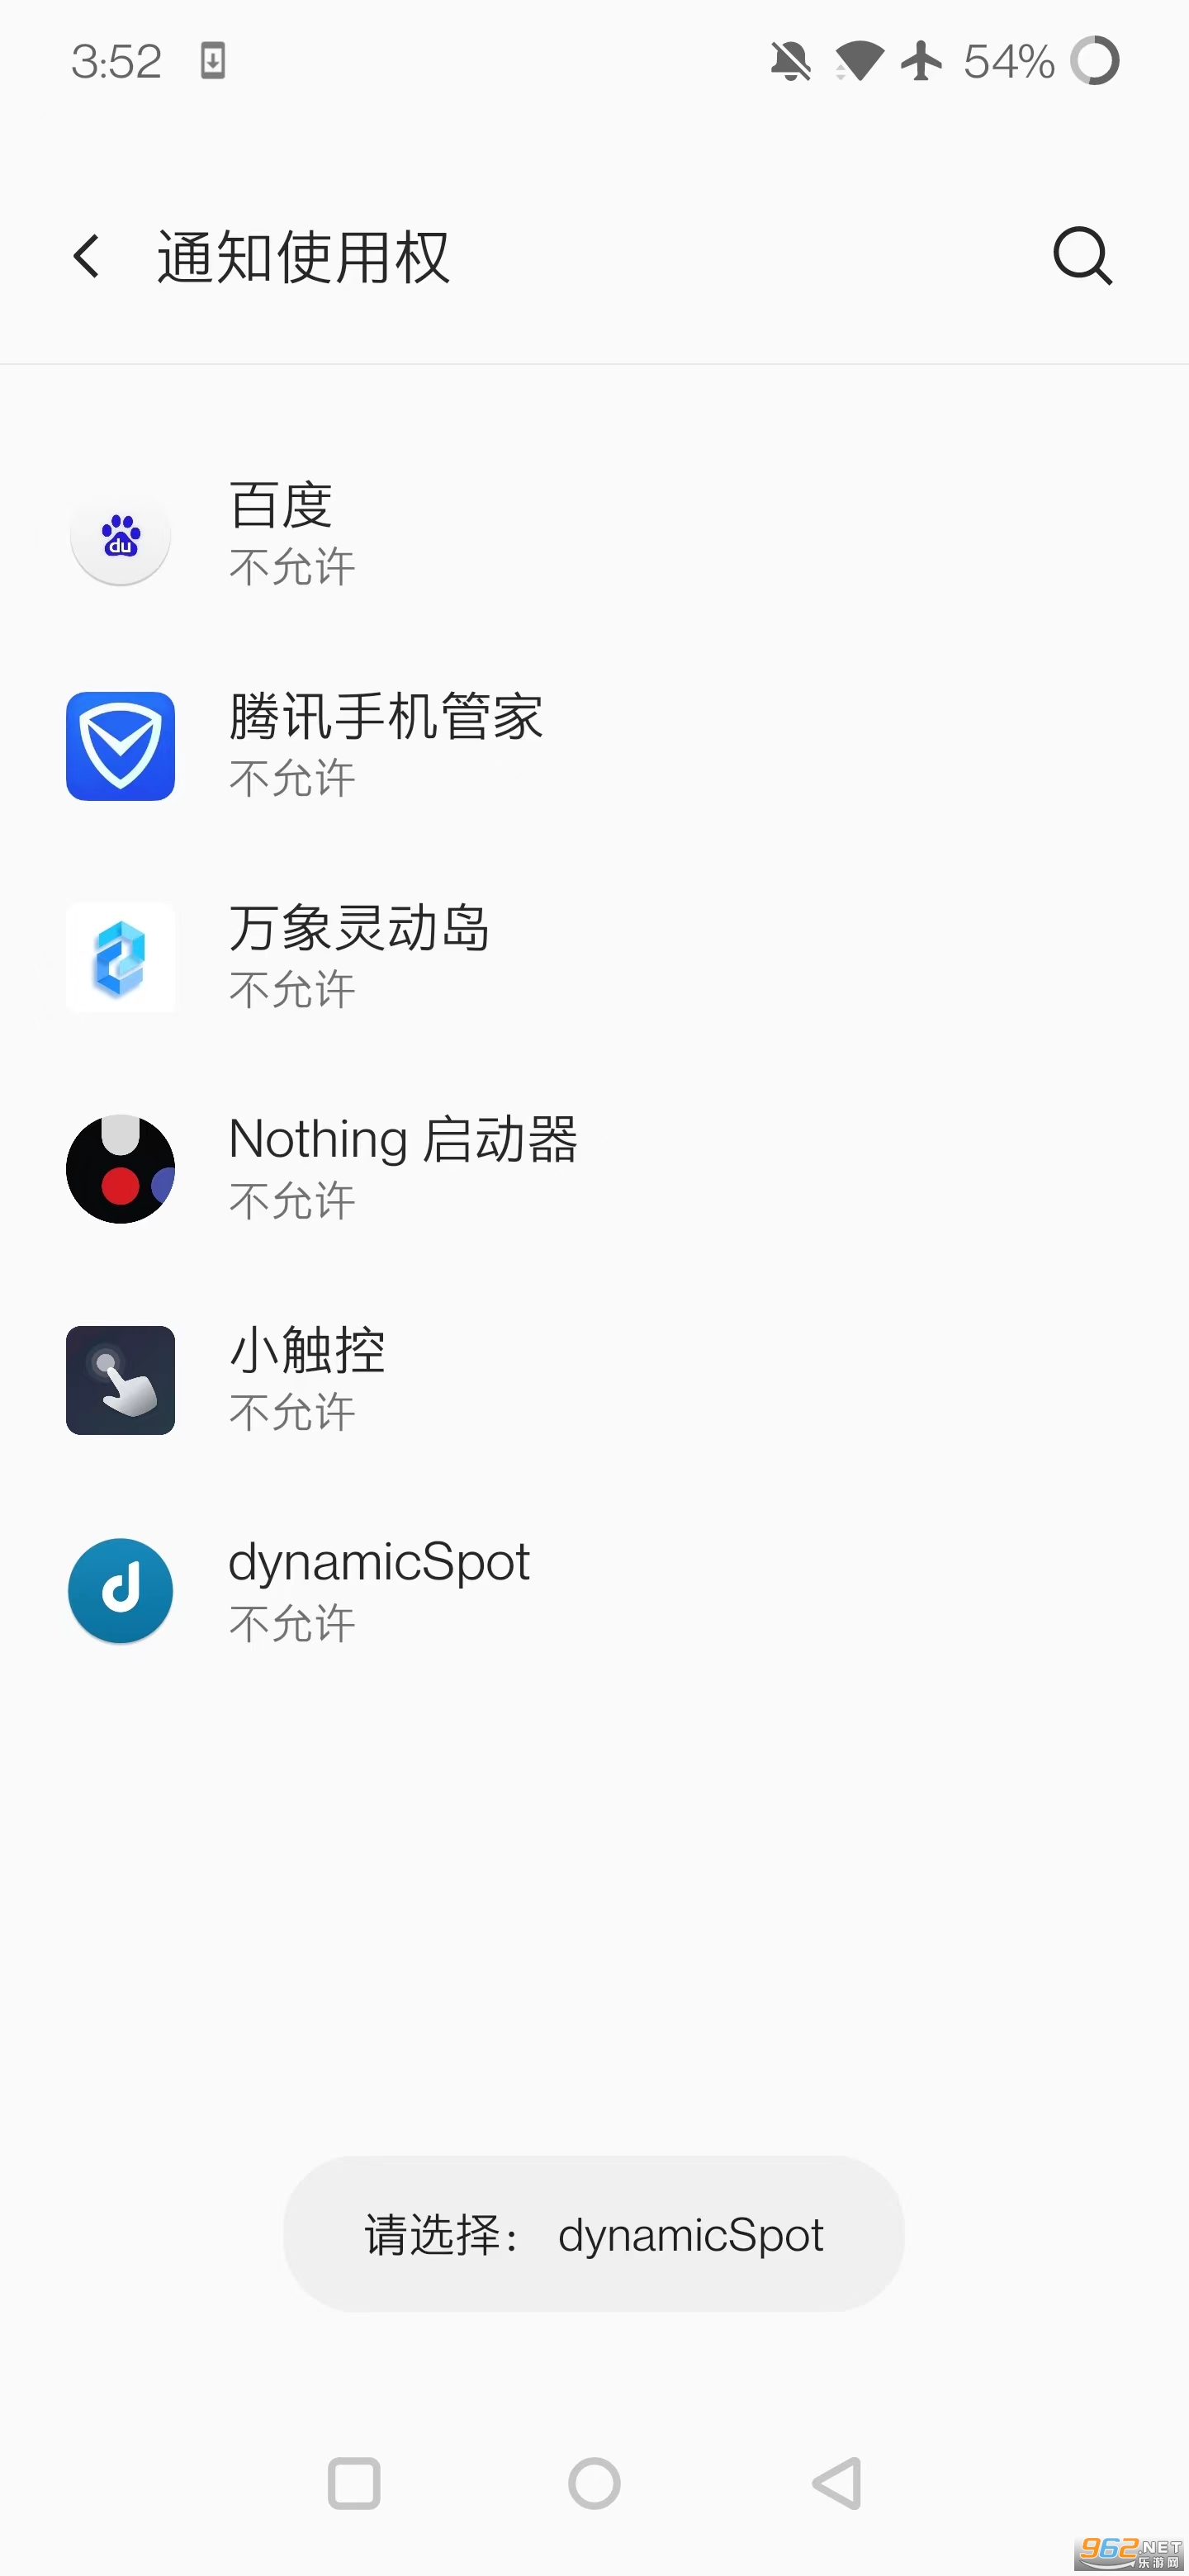 dynamicSpot中文版 v1.63 最新版